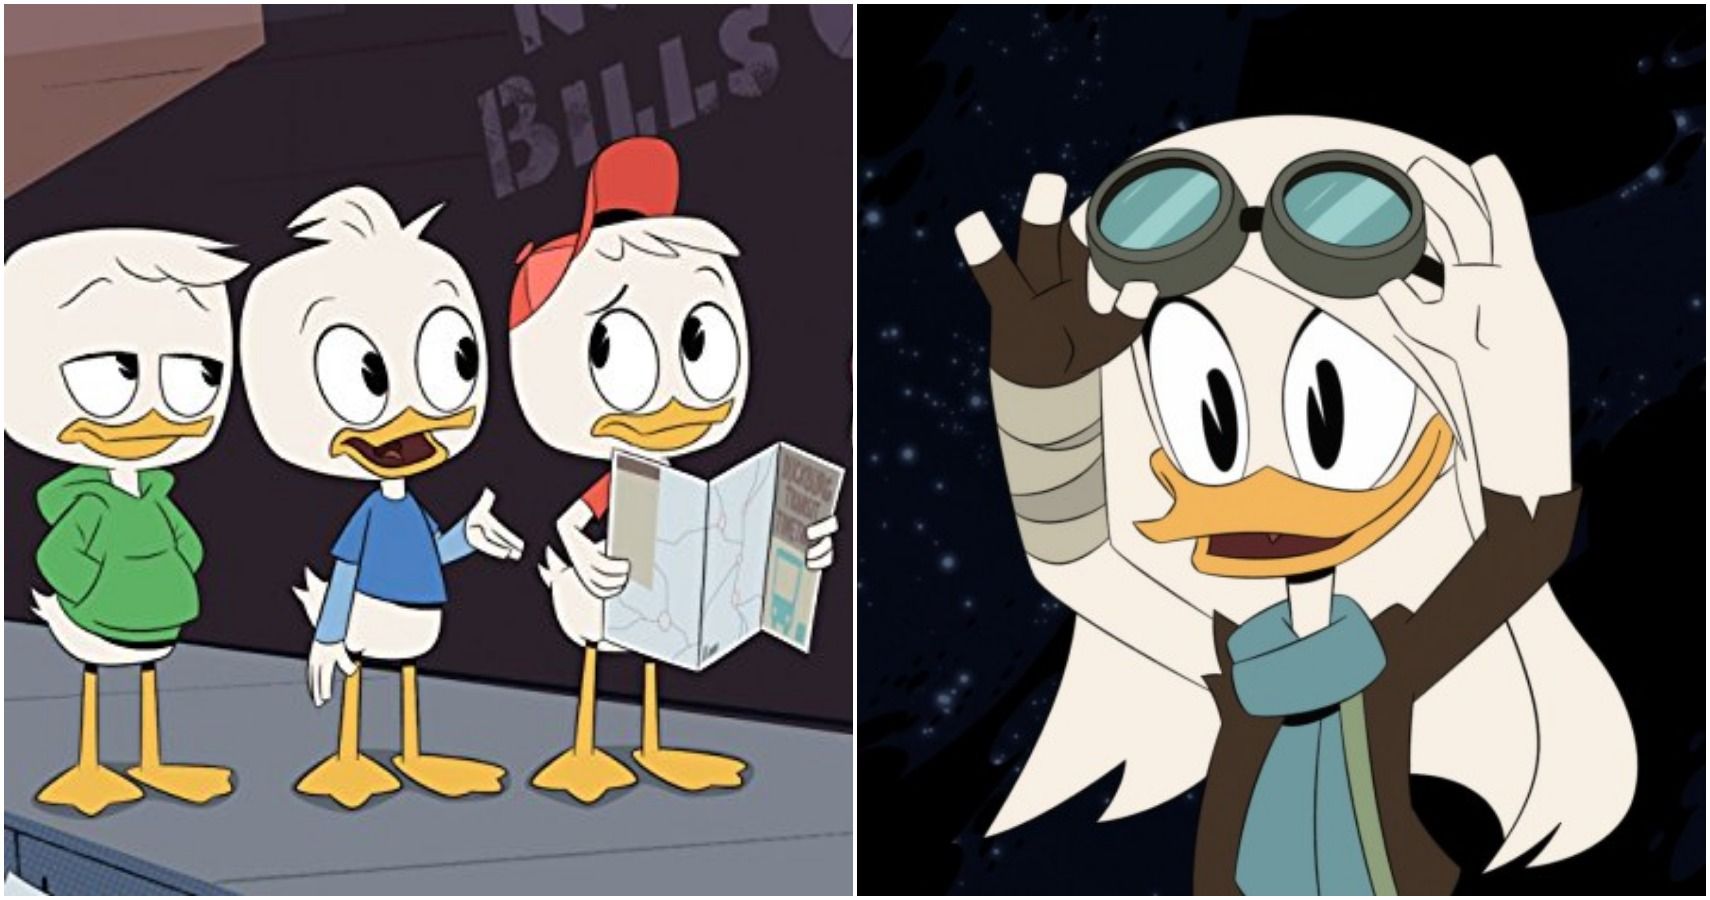 Top 10 Ducktales Reboot Episodes According To Imdb